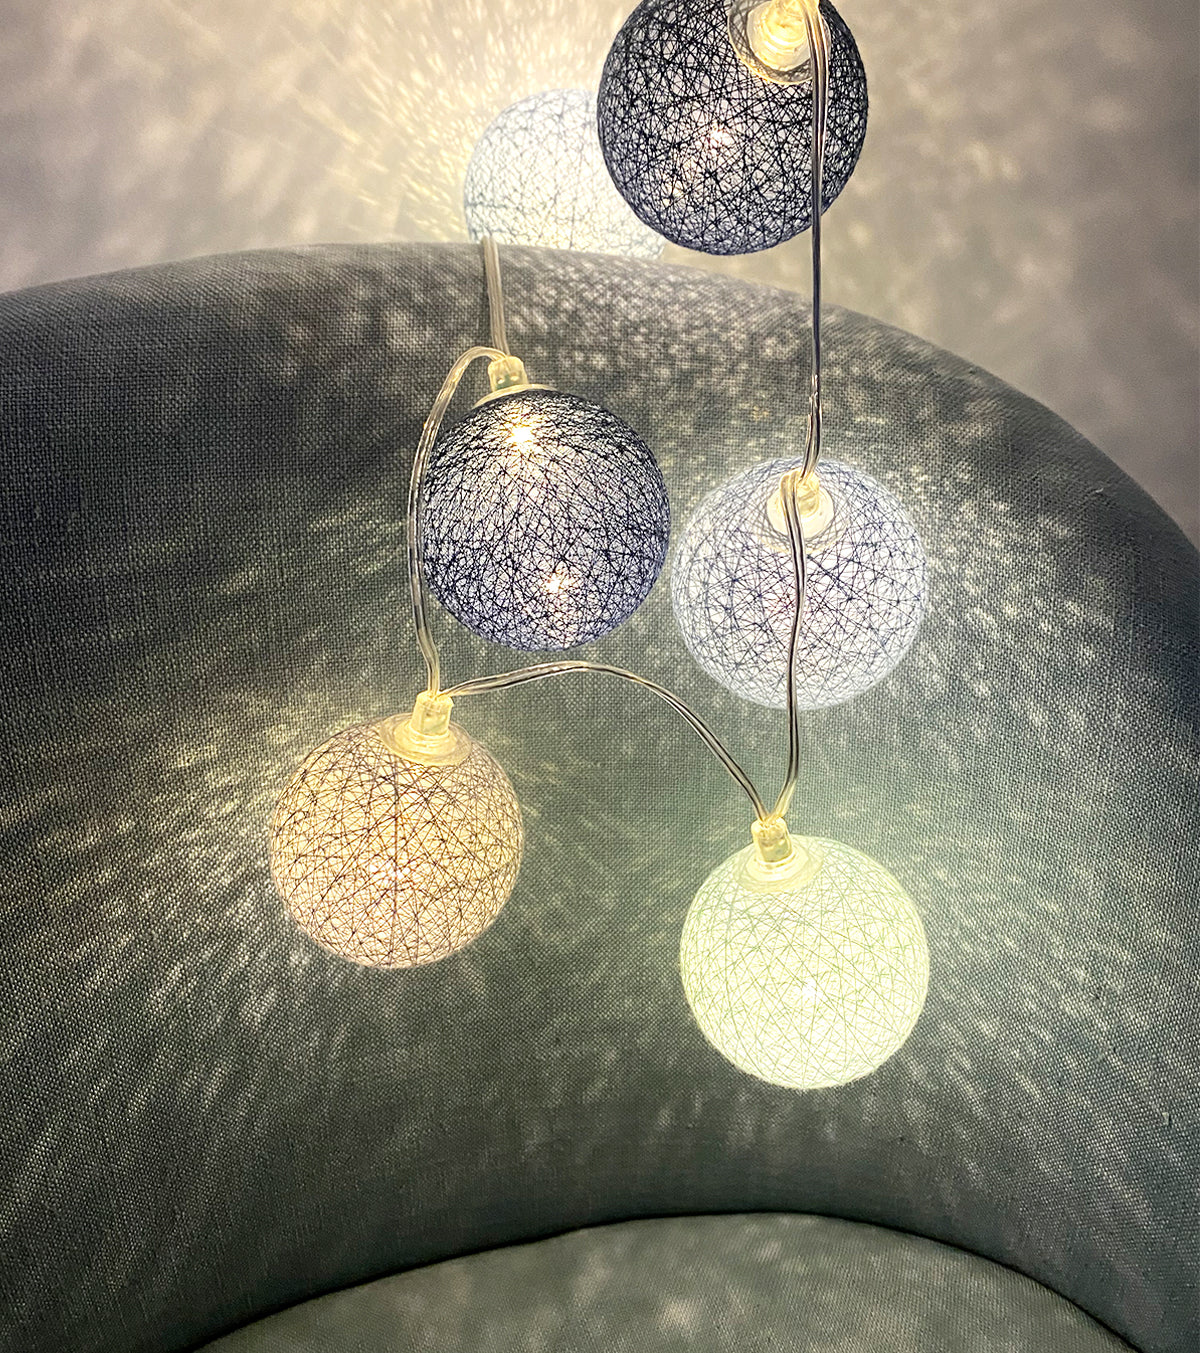 Guirlande lumineuse 24 boules de coton (bleu) - Éclairage décoratif intérieur